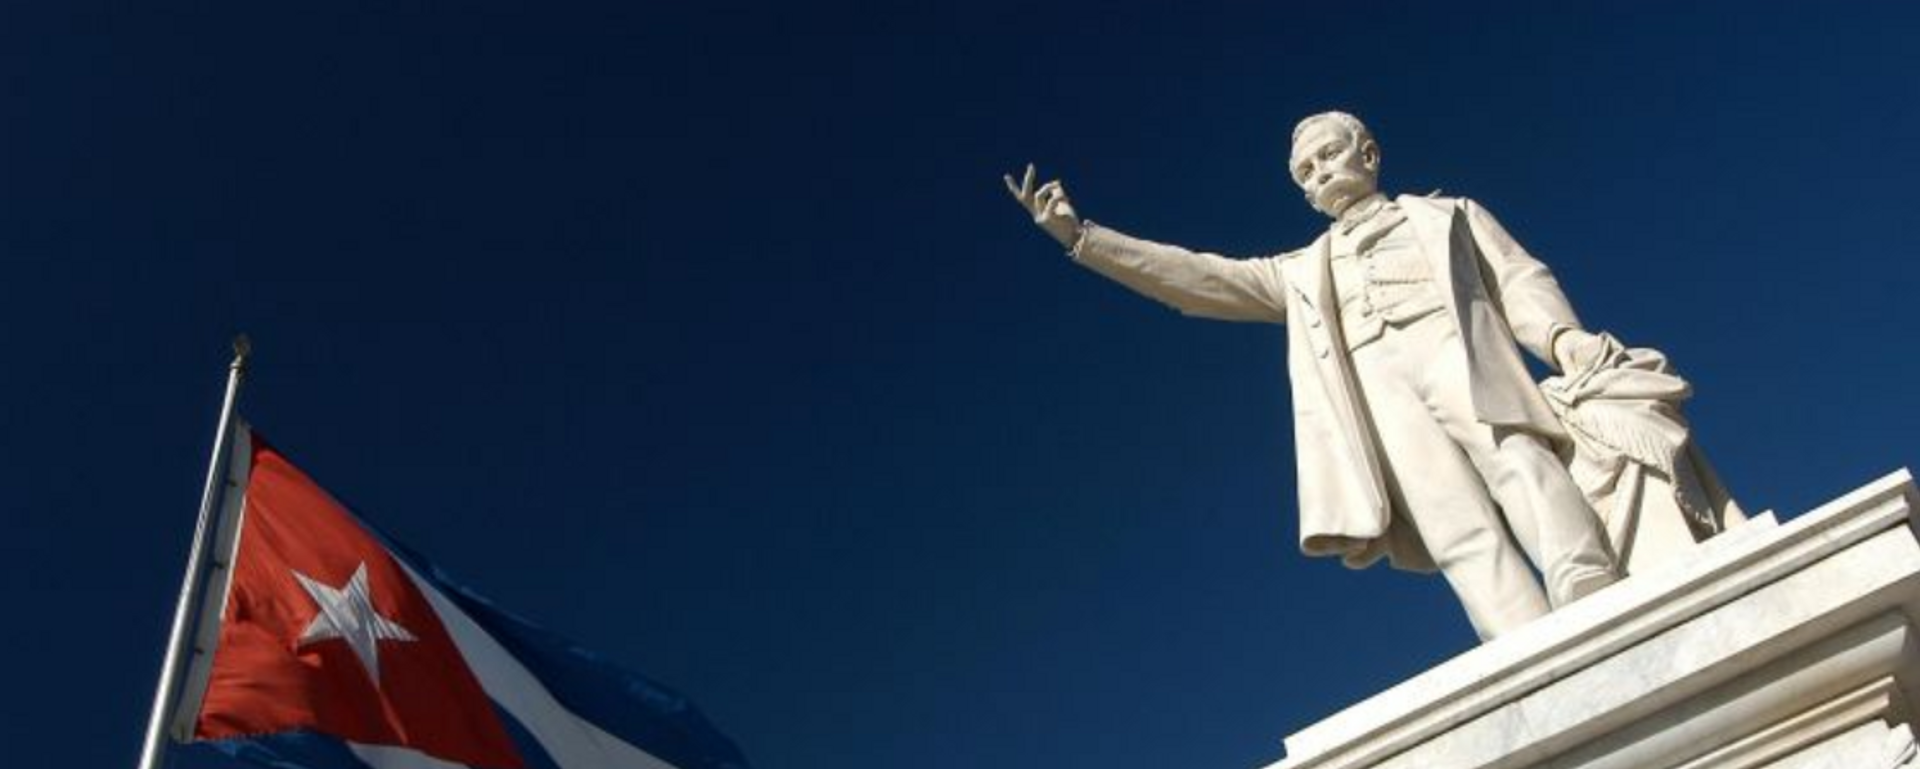 Monumento a José Martí en Cienfuegos, Cuba - Sputnik Mundo, 1920, 19.05.2018